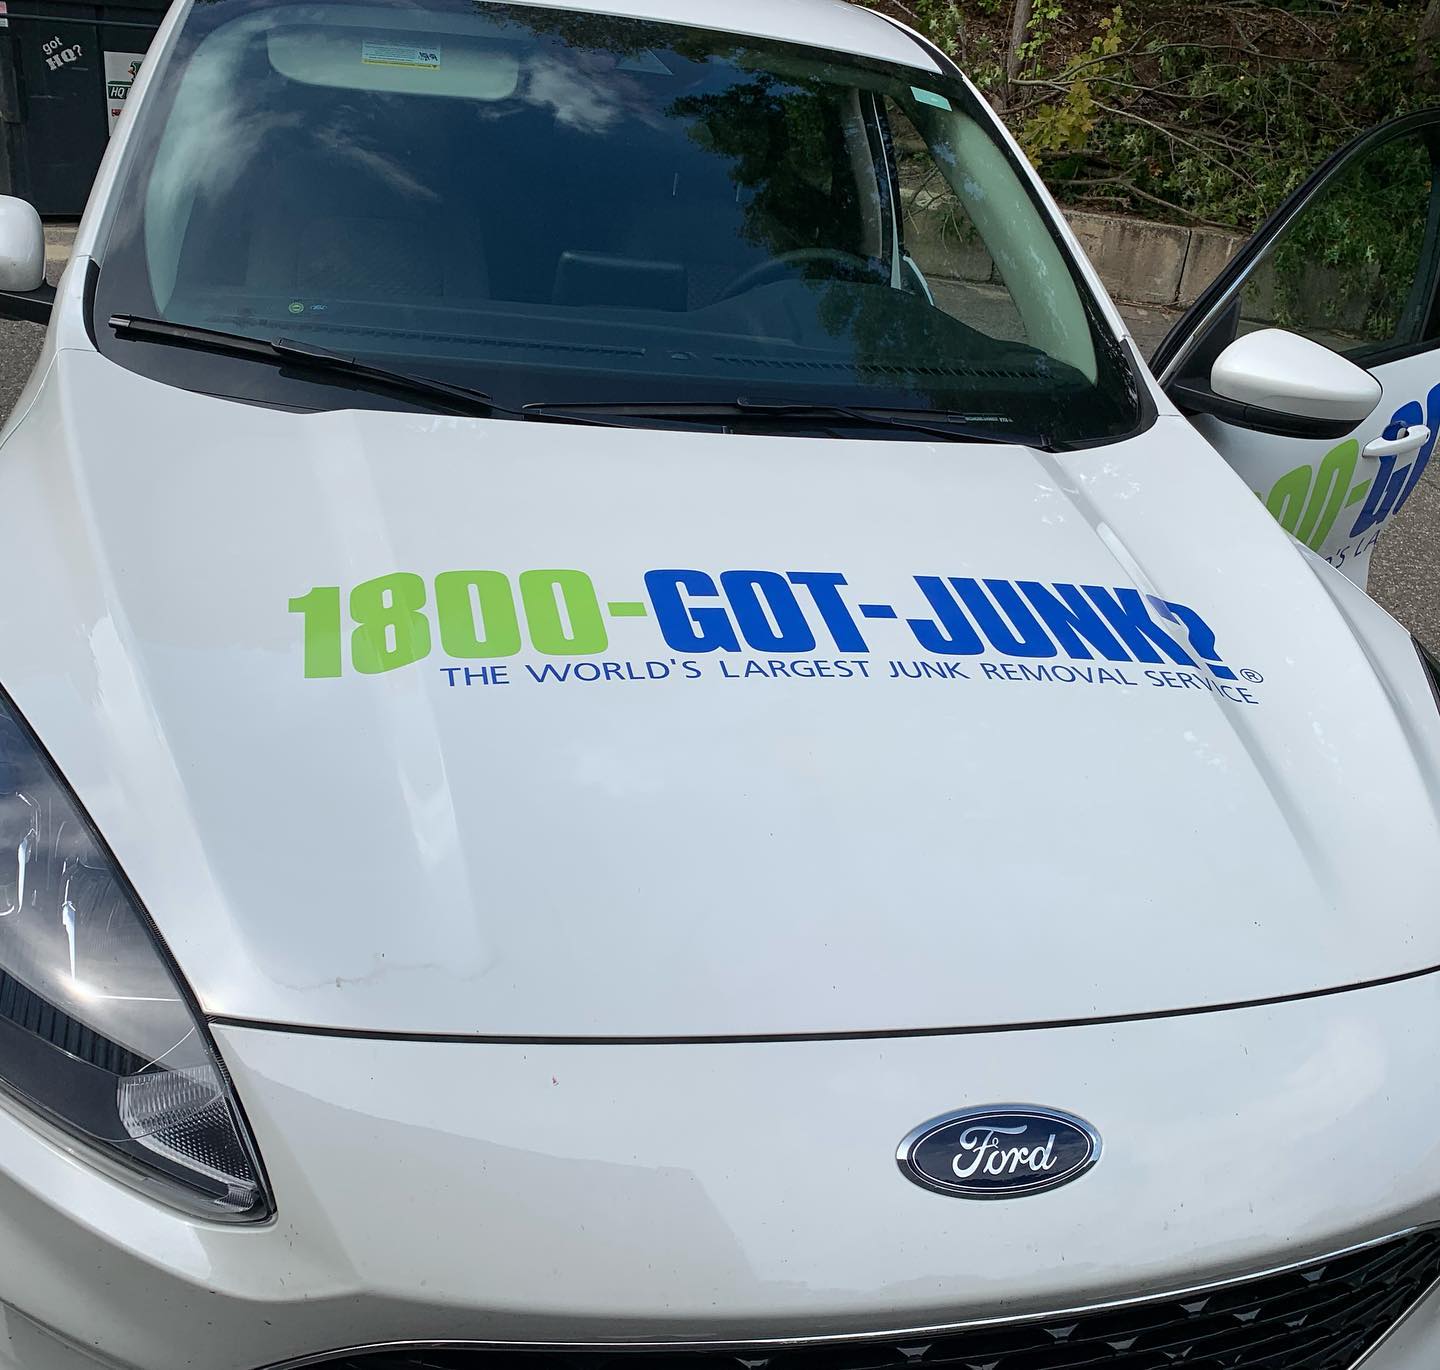 1800 Got Junk Car